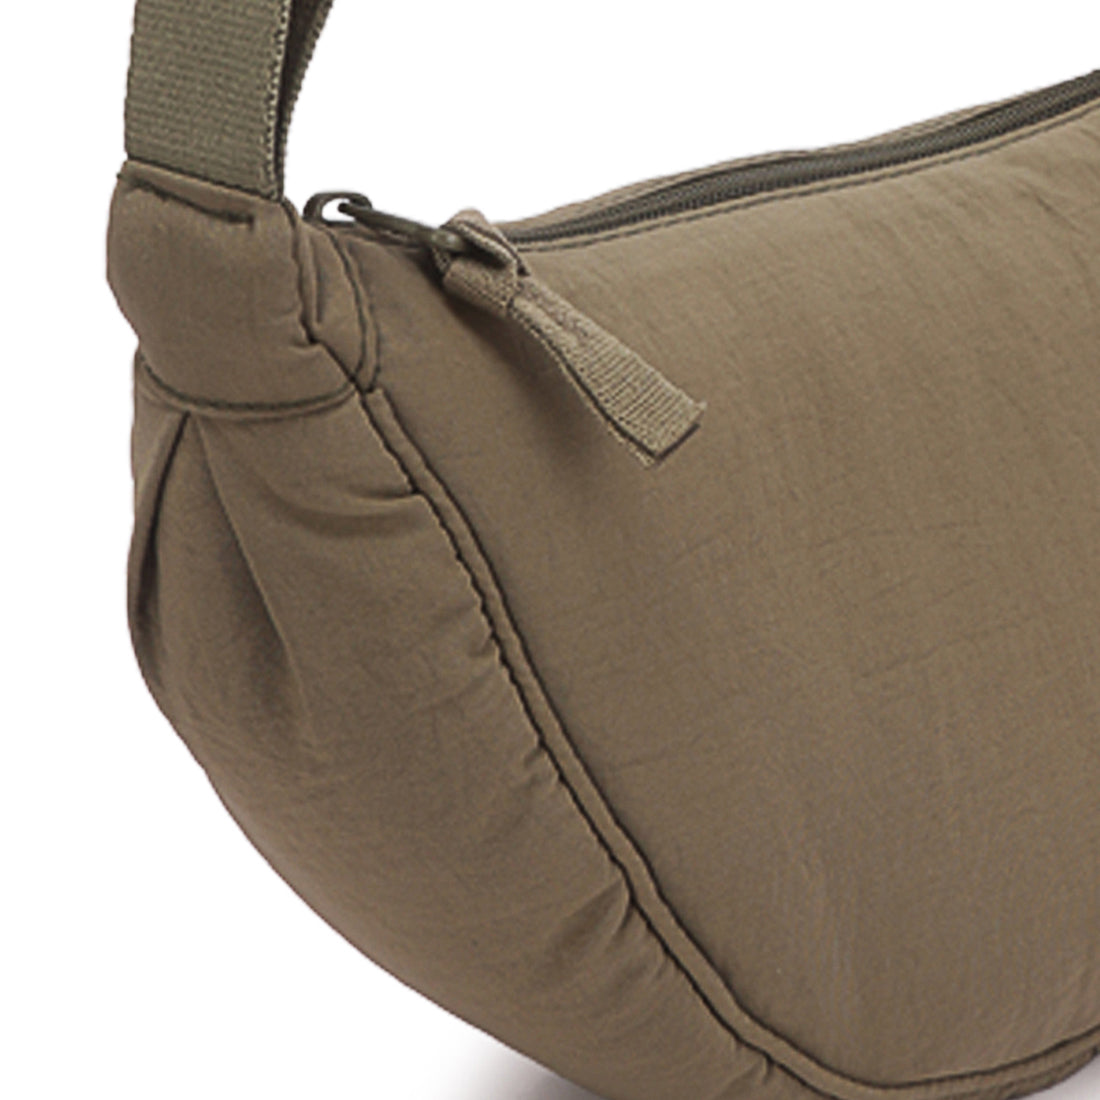 adjustable strap nylon mini shoulder bag#color_olive green